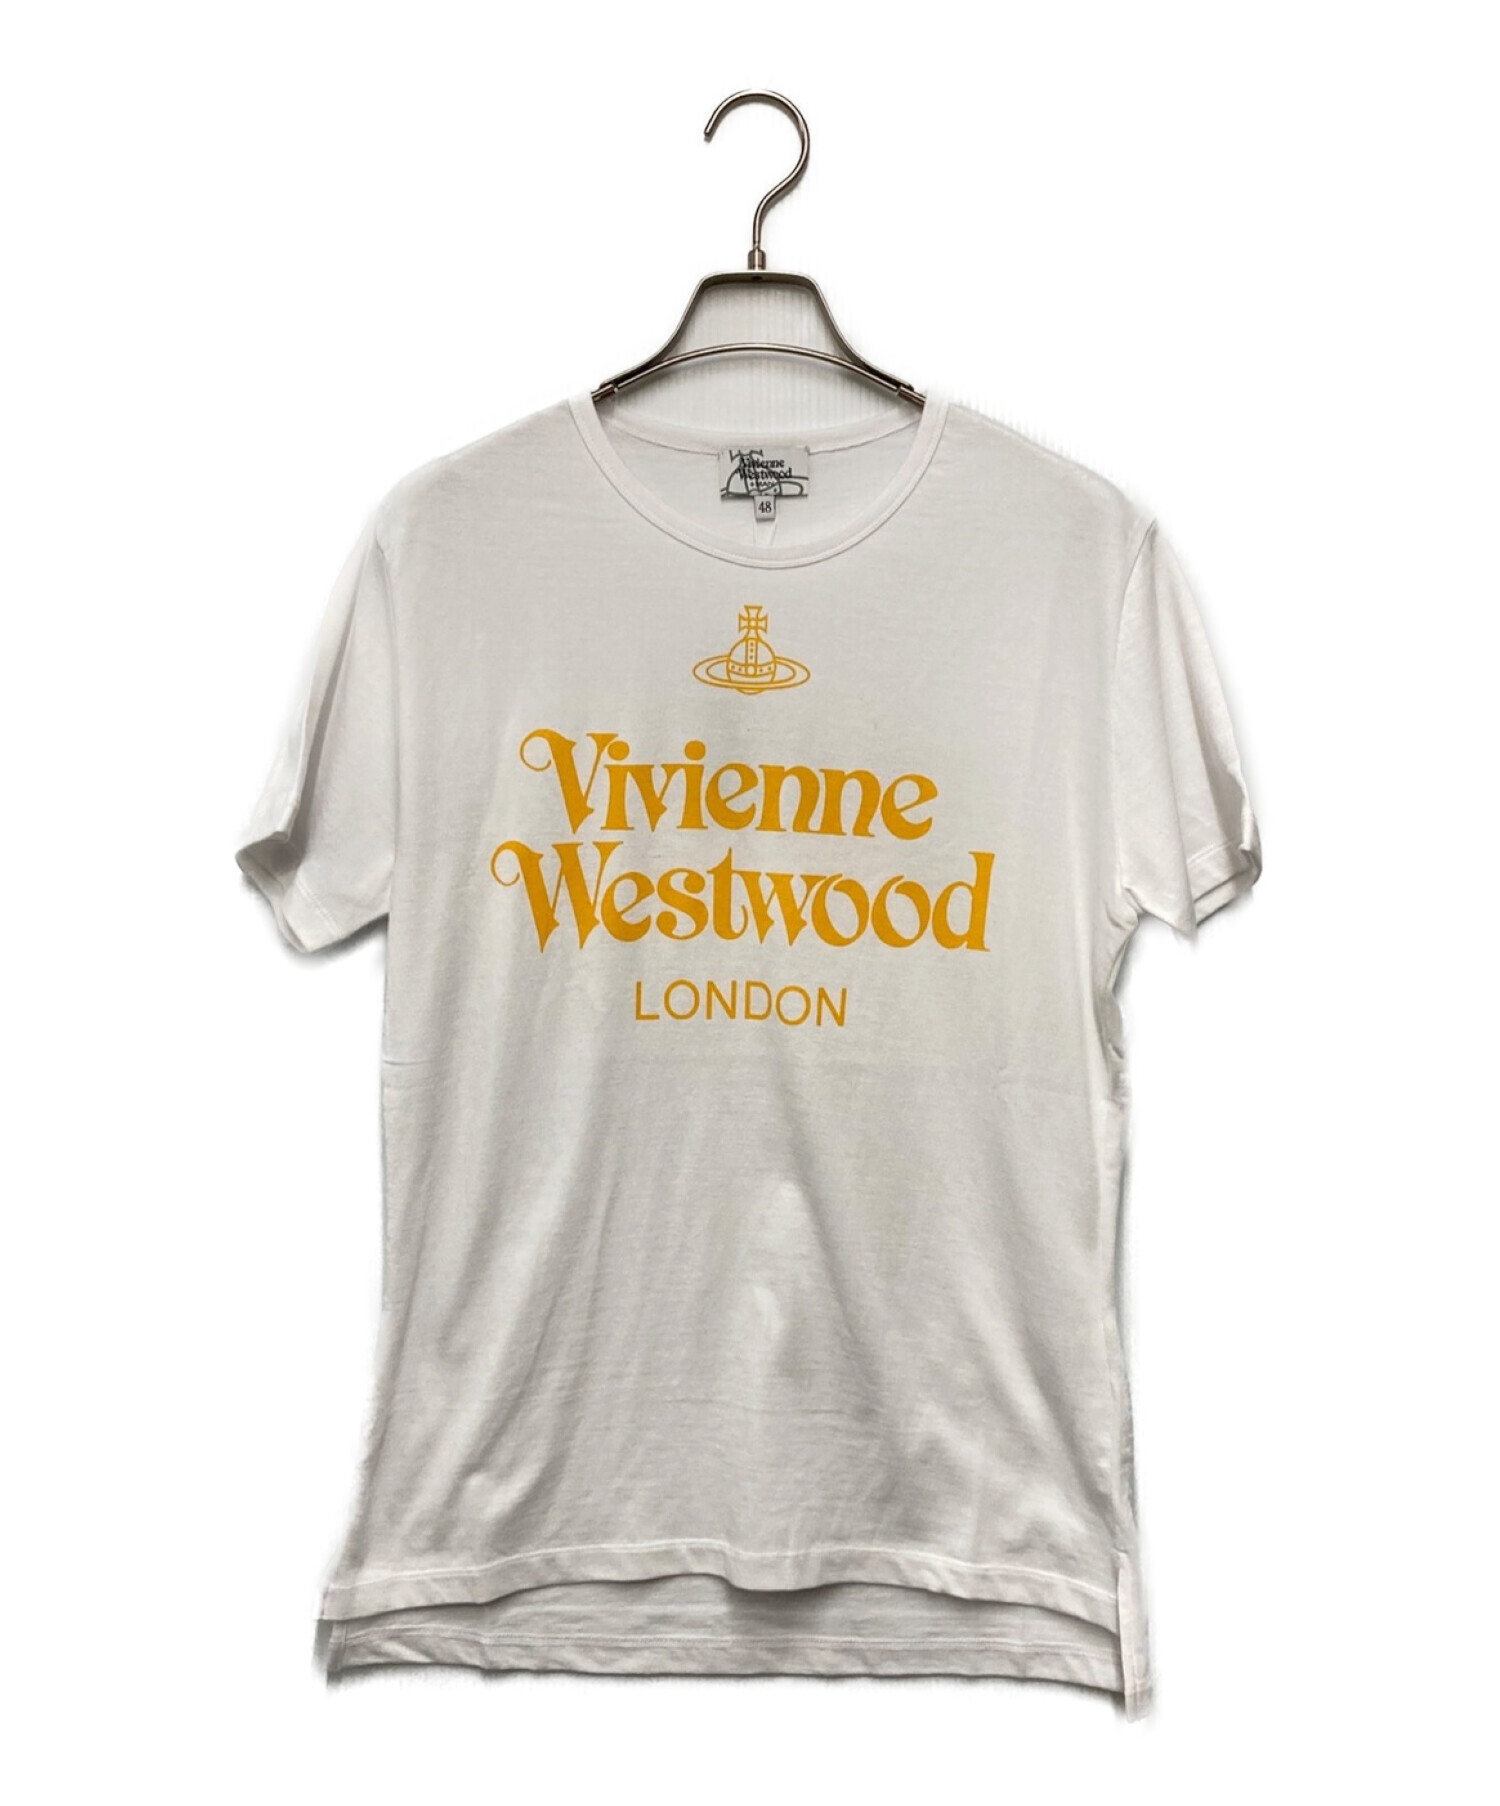 中古・古着通販】Vivienne Westwood man (ヴィヴィアン ウェストウッド